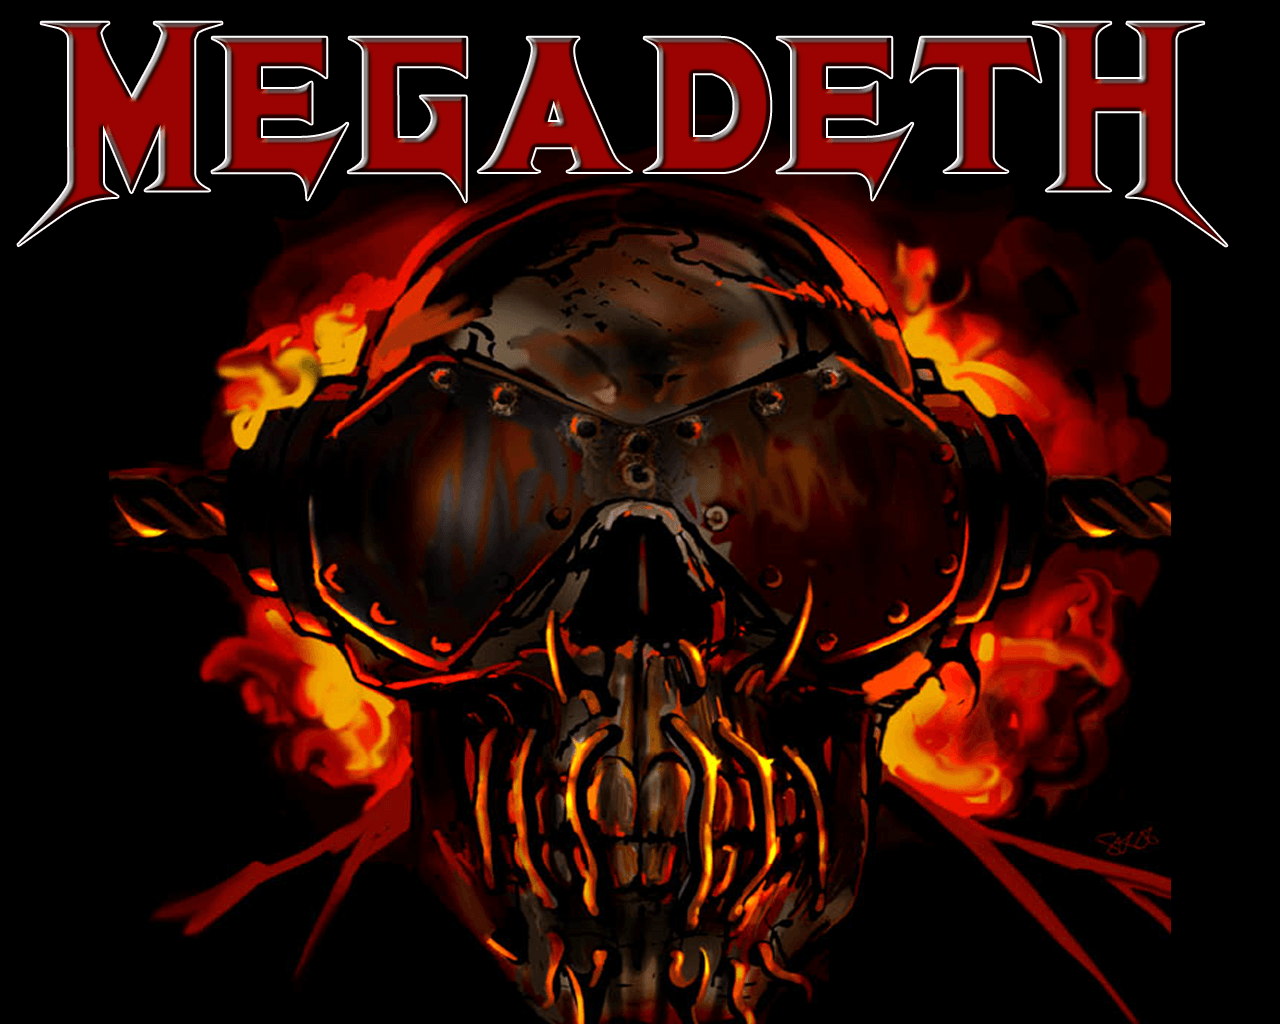 wallpaper: Wallpaper Megadeth. MEGADETH!!!!!! no metallica allowed